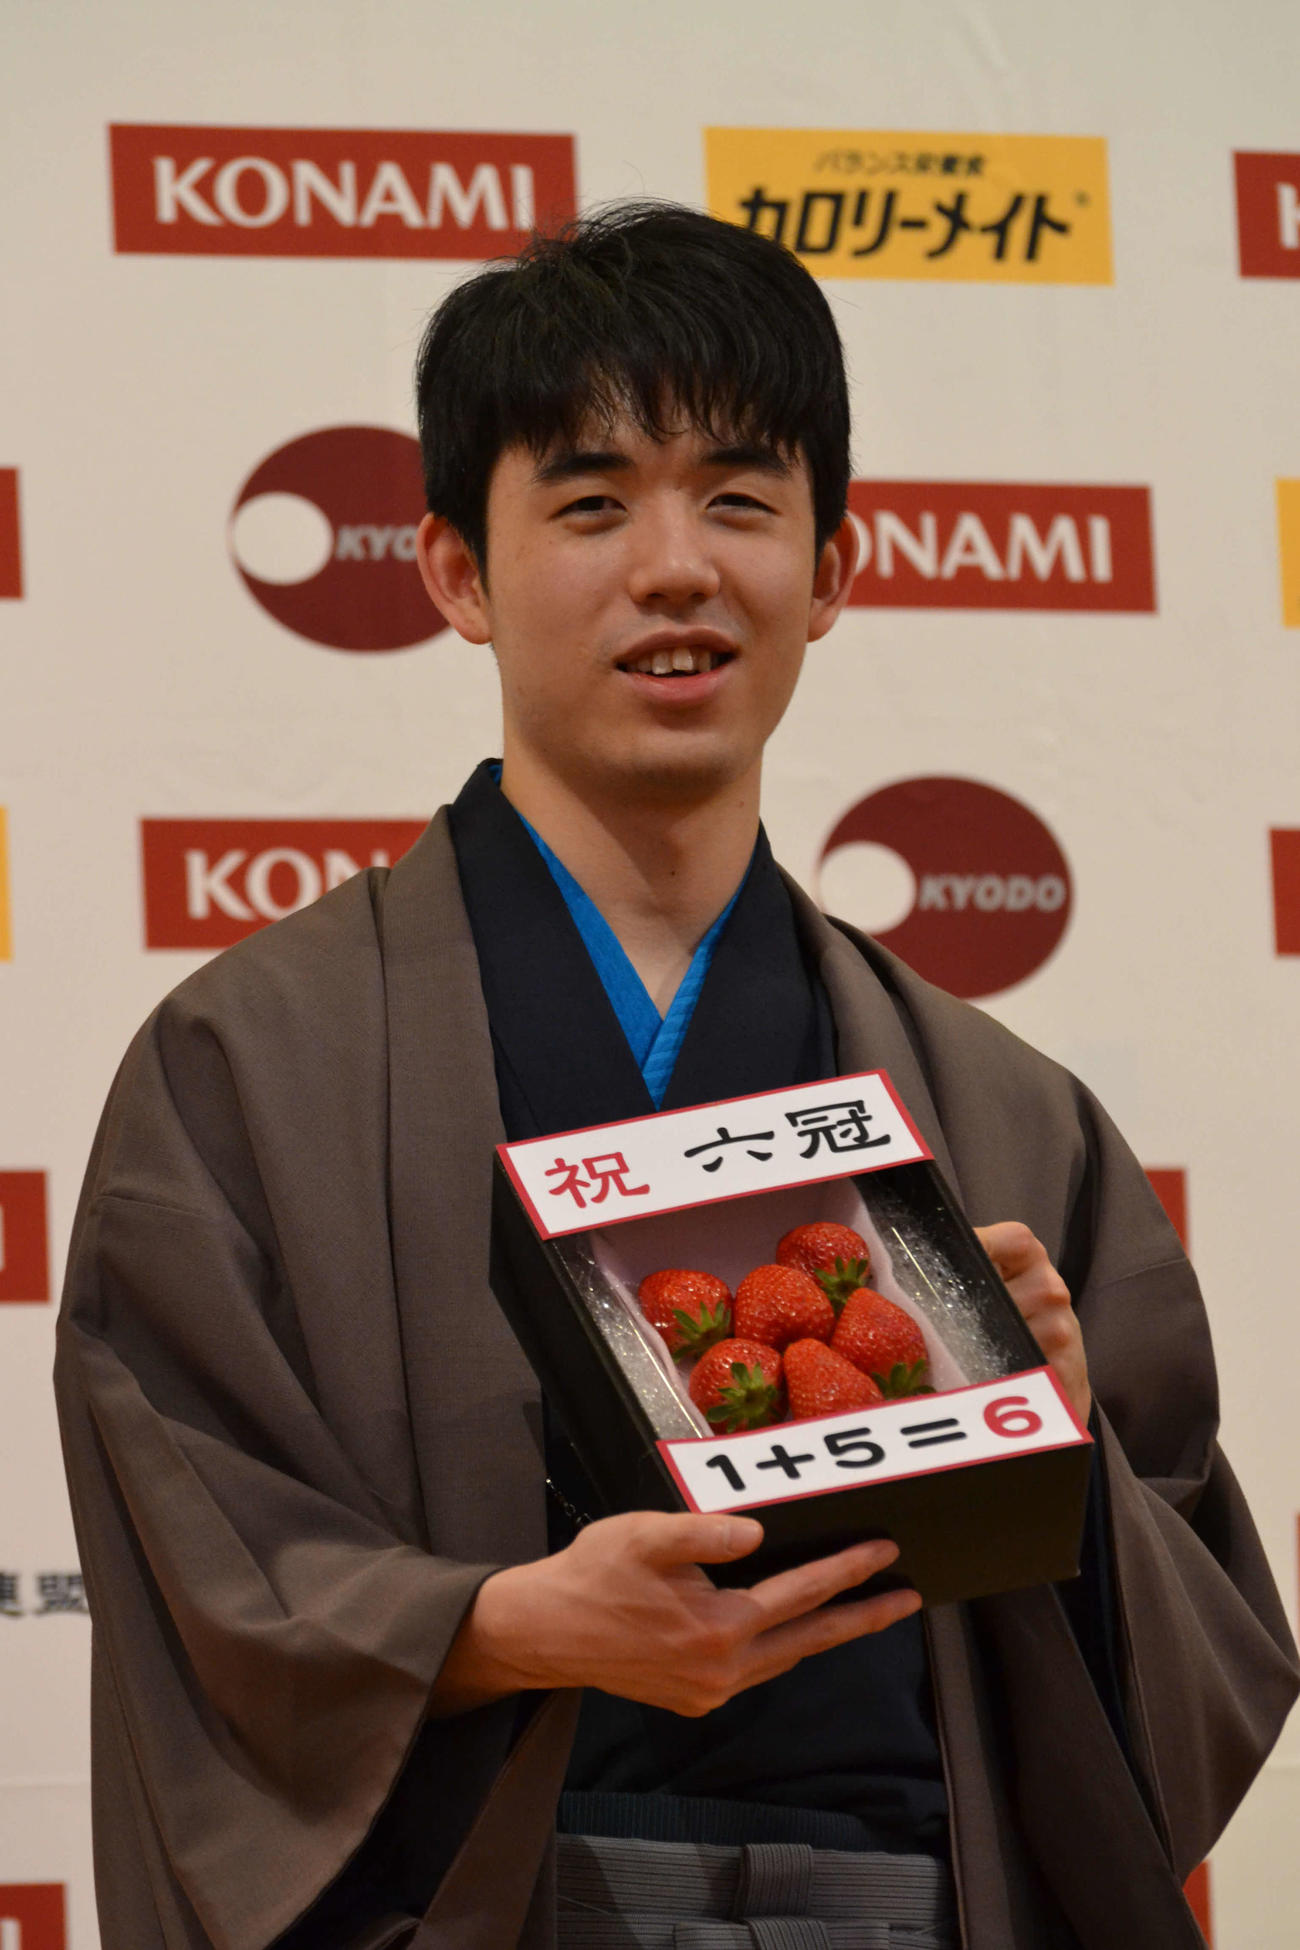 棋王を加えて6冠となり、栃木県特産のイチゴを手にする藤井聡太棋王